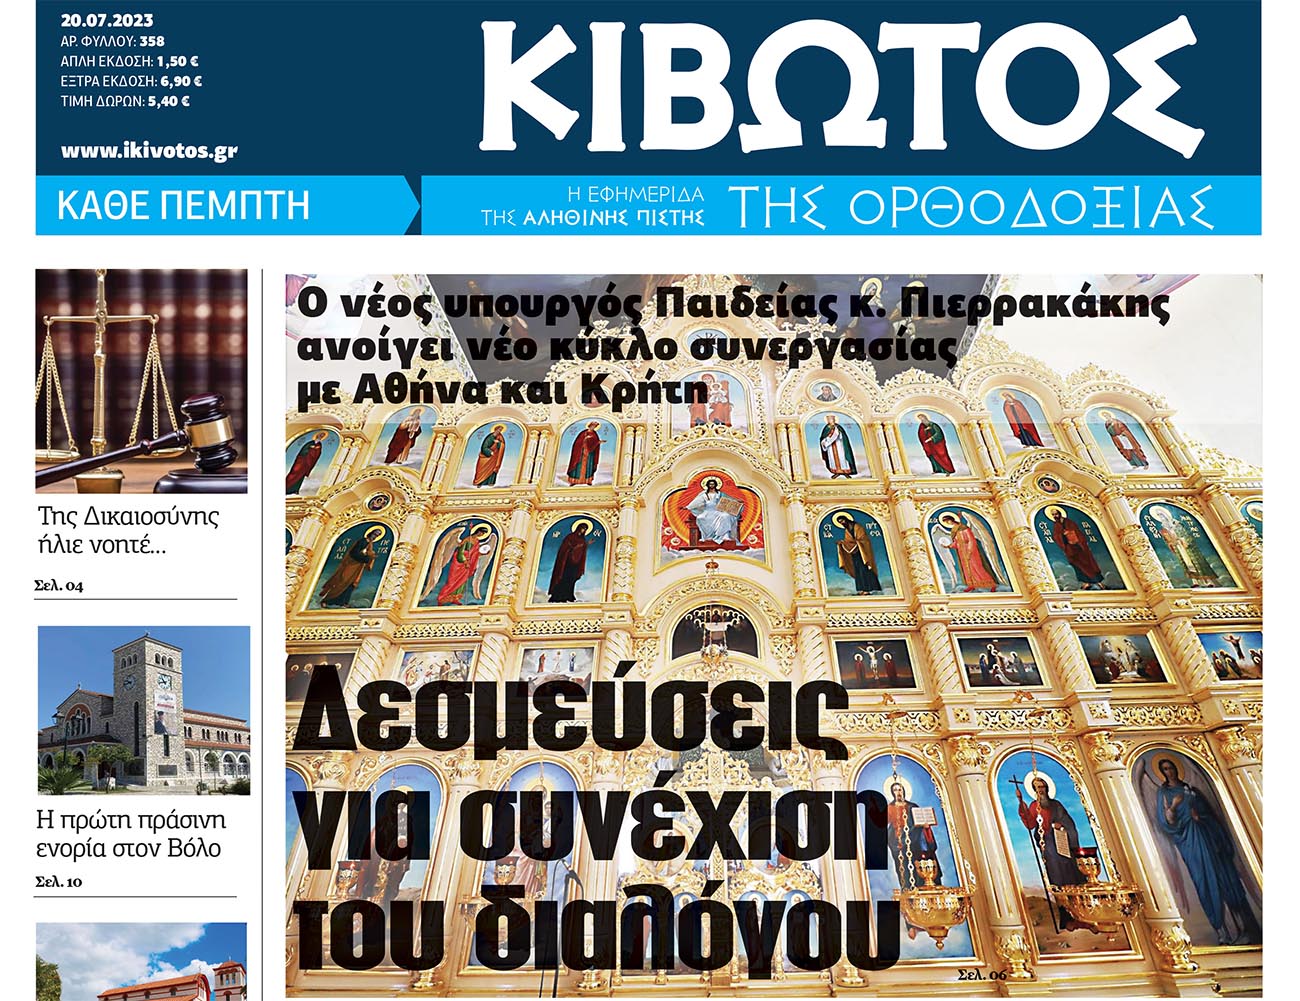 Την Πέμπτη, 20 Ιουλίου, κυκλοφορεί το νέο φύλλο της Εφημερίδας «Κιβωτός της Ορθοδοξίας»